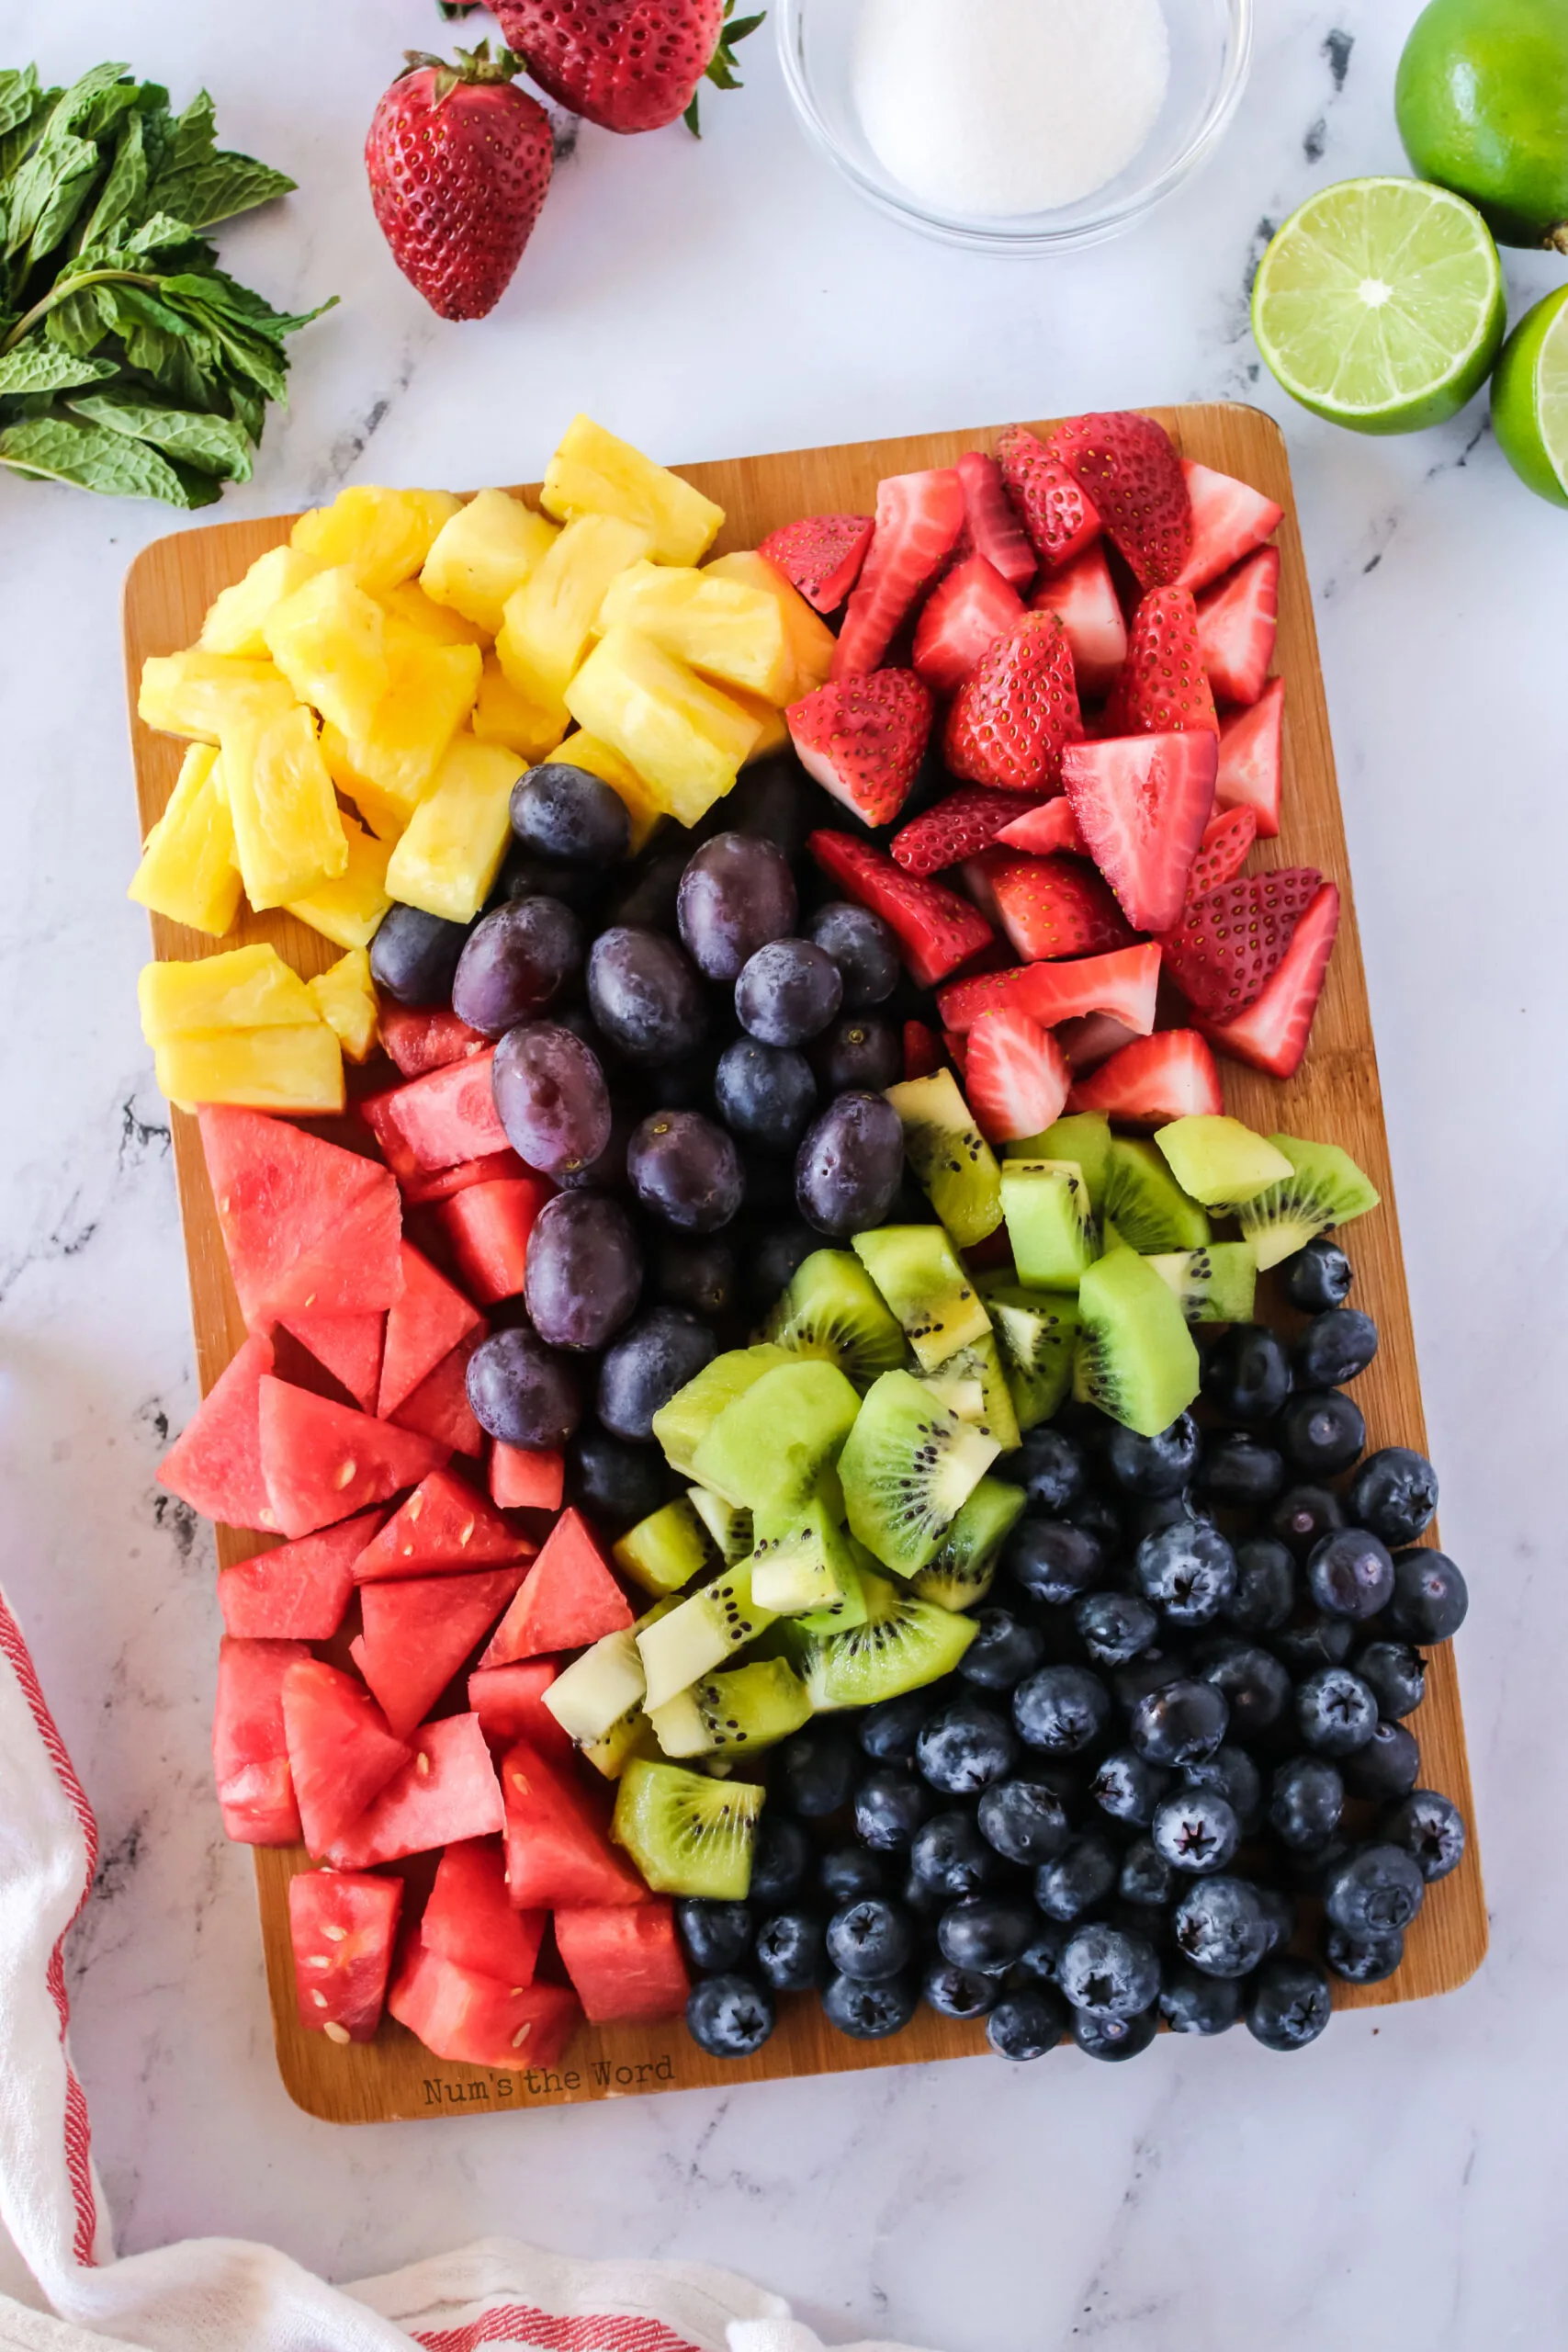 All cut fruits on a cutting board